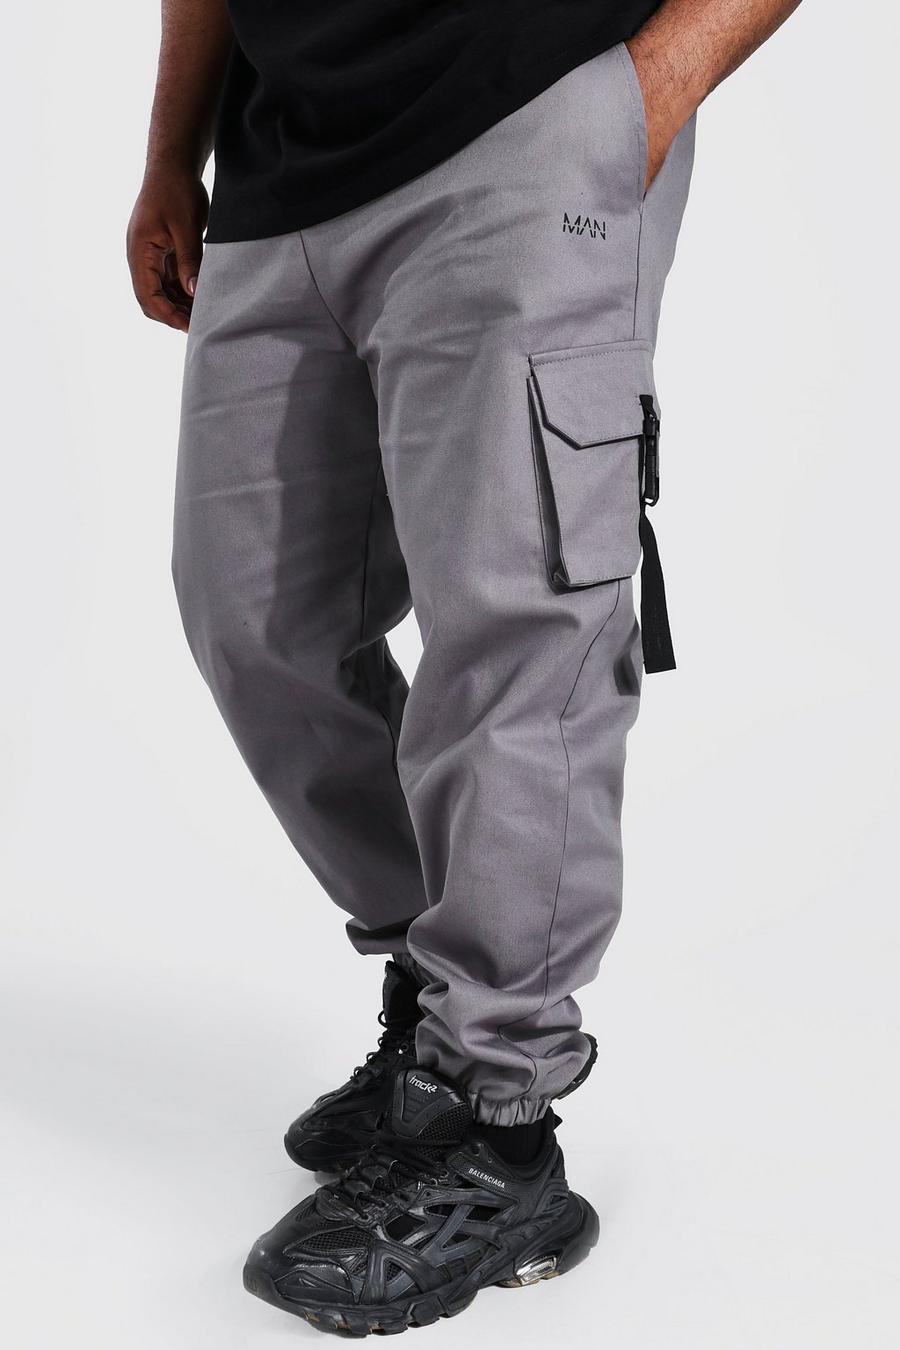 צפחה gris מכנסי ריצה עם אבזם מבד טוויל וכיתוב Original Man למידות גדולות